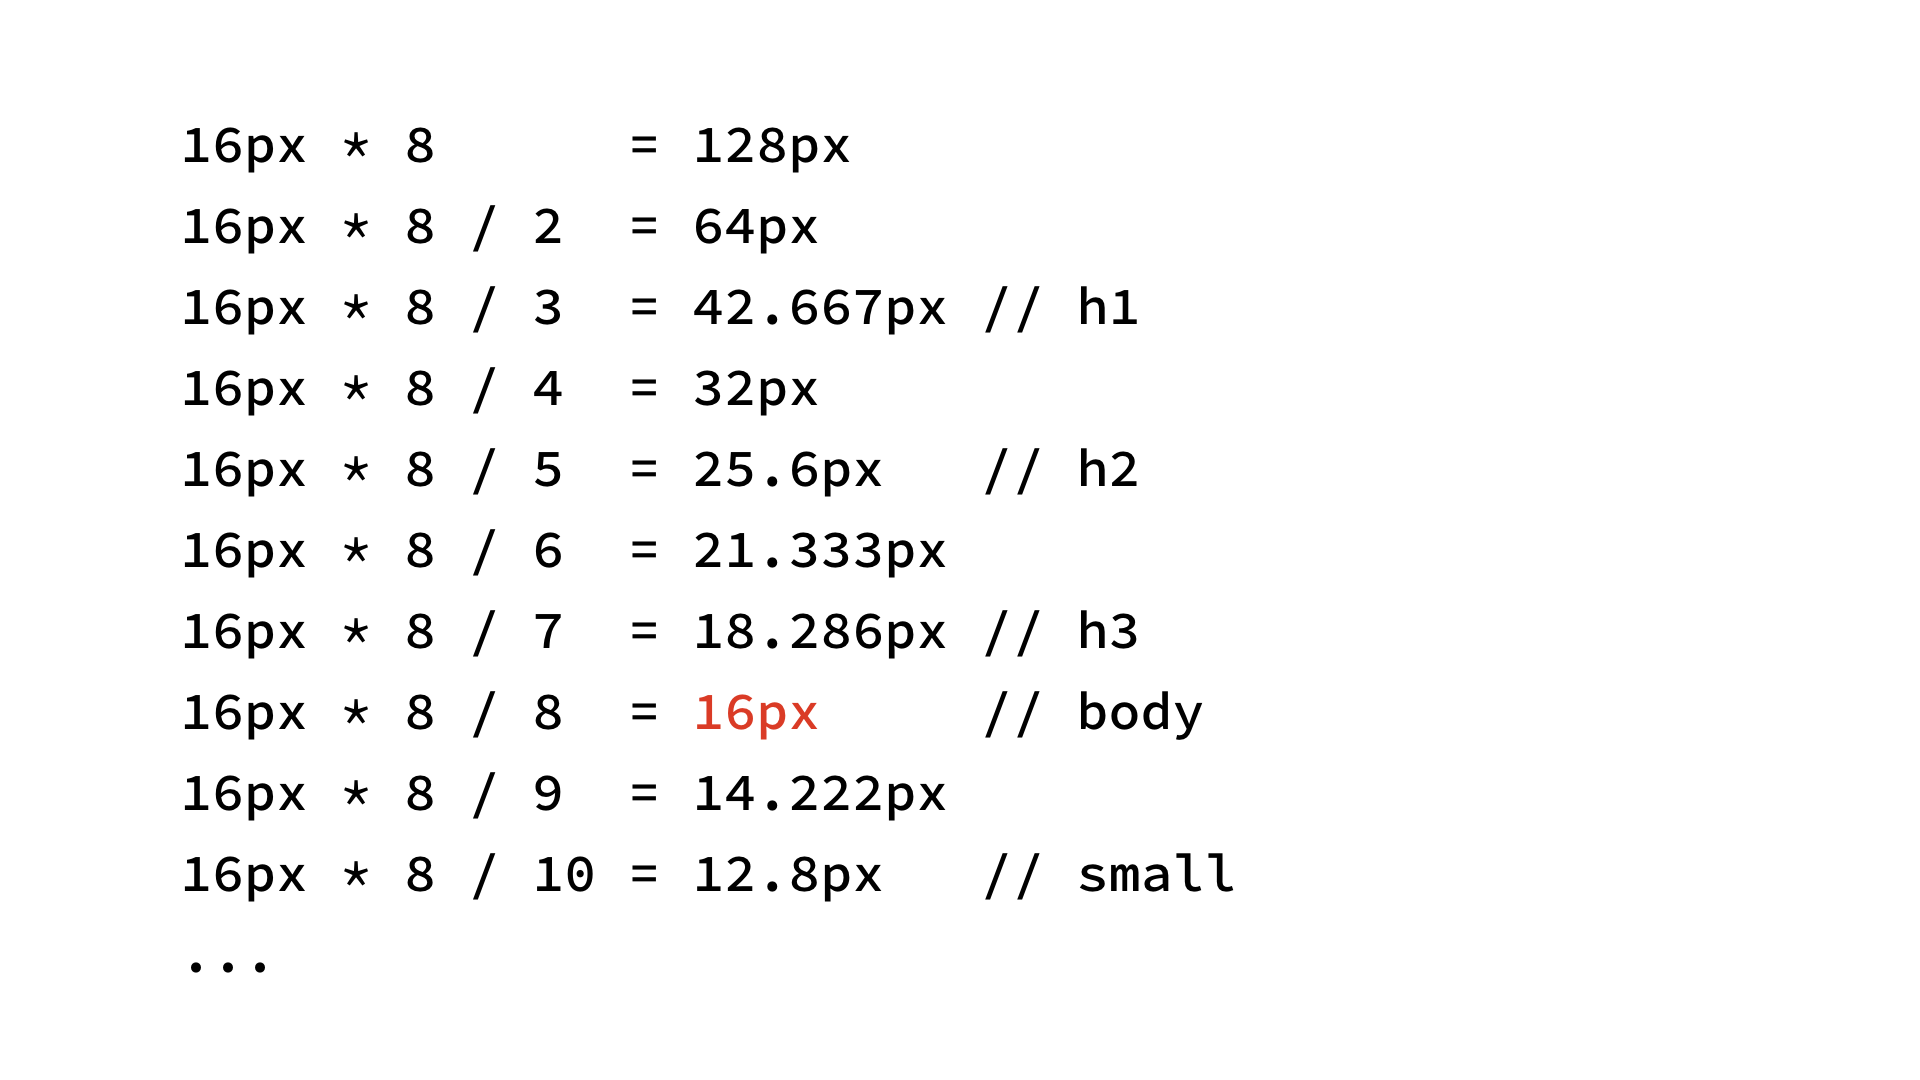  16px * 8 = 128px; 16px * 8 / 2 = 64px; 16px * 8 / 3 = 42.667px (h1); 16px * 8 / 4 = 32px; 16px * 8 / 5 = 25.6px (h2); 16px * 8 / 6 = 21.333px; 16px * 8 / 7 = 18.286px (h3); 16px * 8 / 8 = 16px (body); 16px * 8 / 9 = 14.222px; 16px * 8 / 10 = 12.8px (small); . 